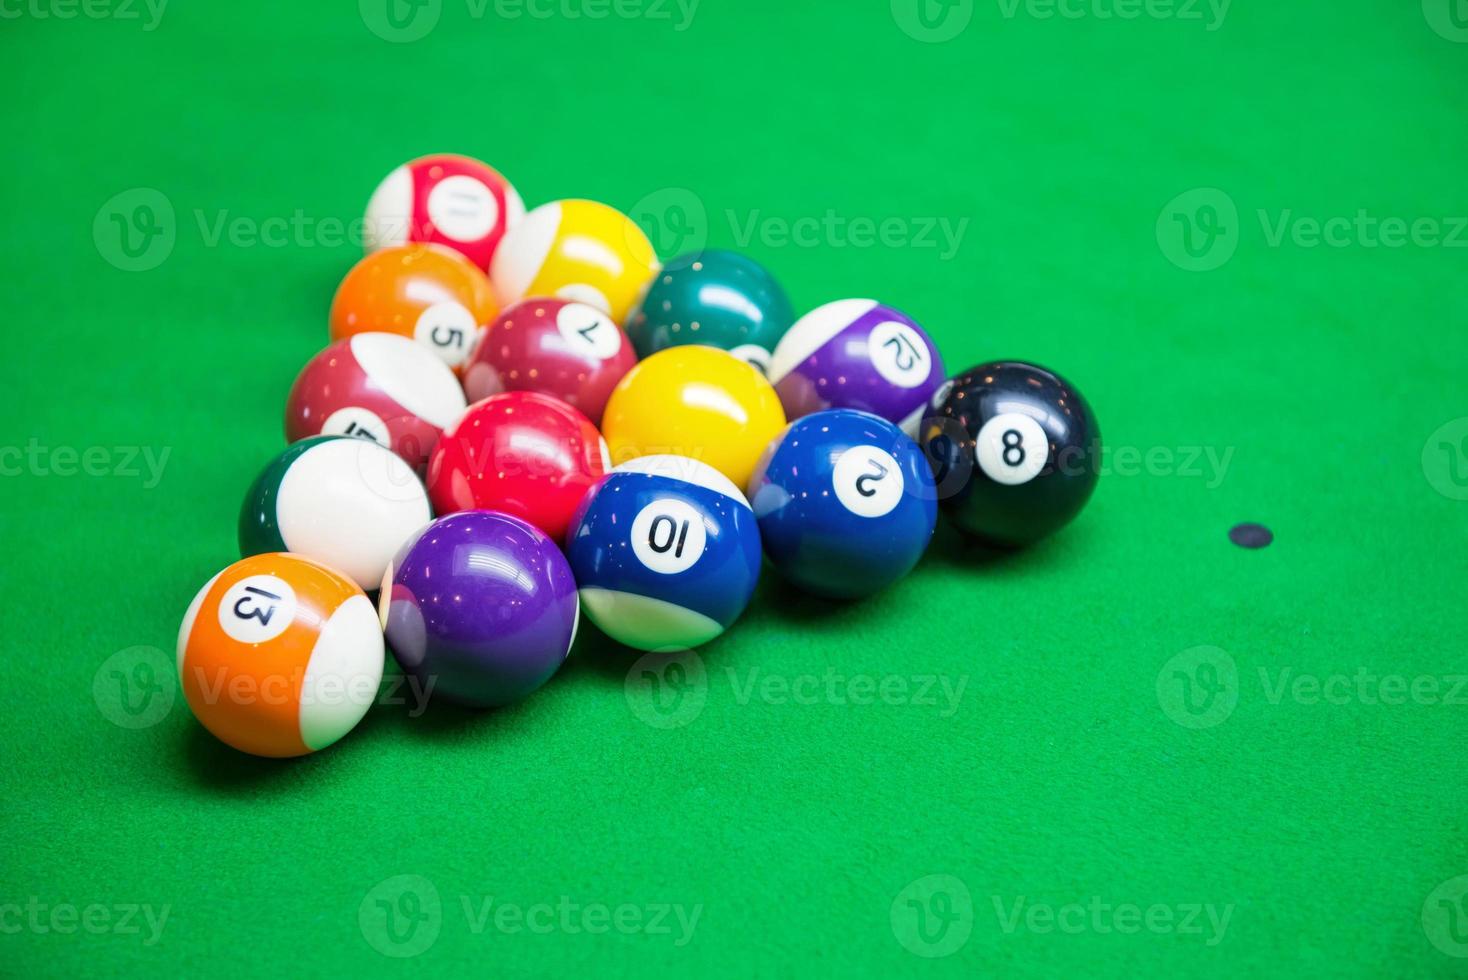 slå samman bollar på snooker tabell foto